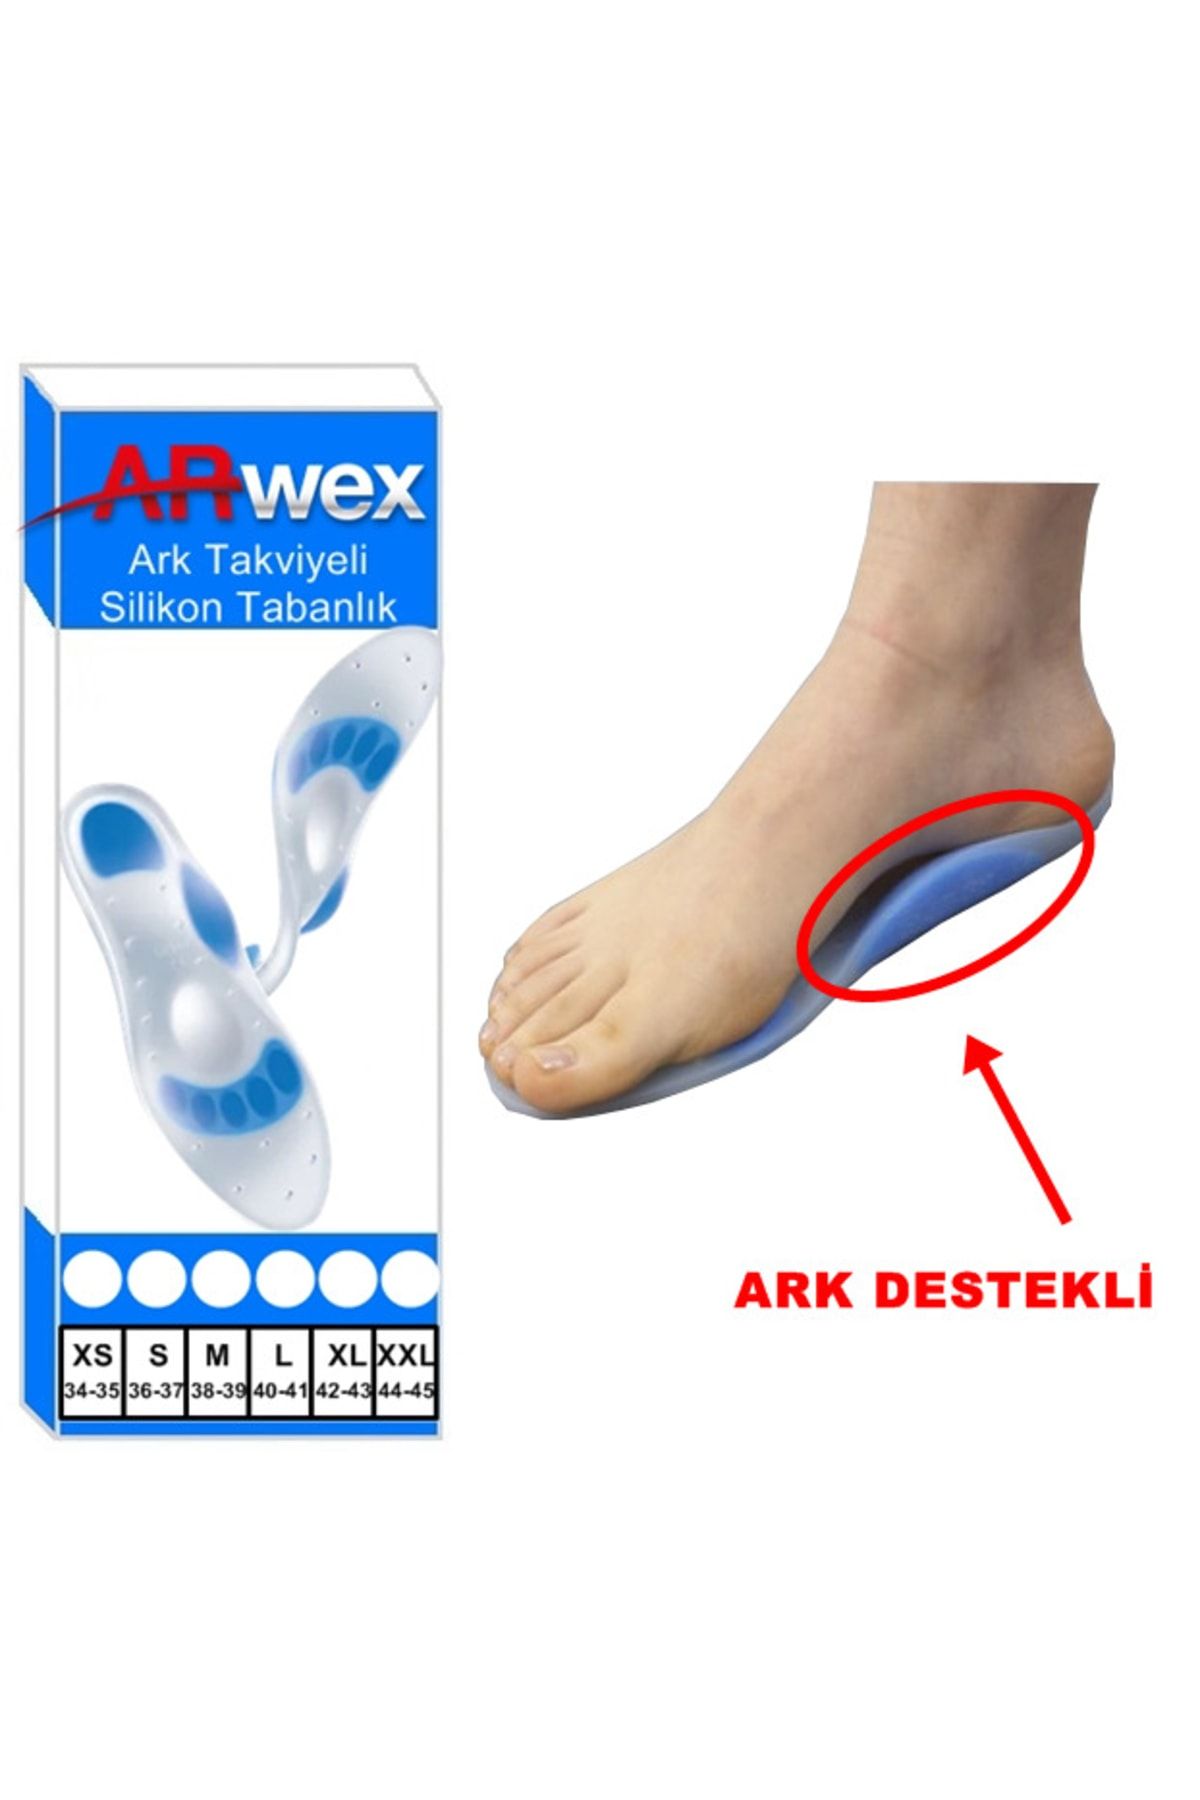 ARWEX Ark Takviyeli Taban Düşüklüğü Düz Taban Içe Basma Destekli Anatomik Silikon Ayakkabı Tabanlığı